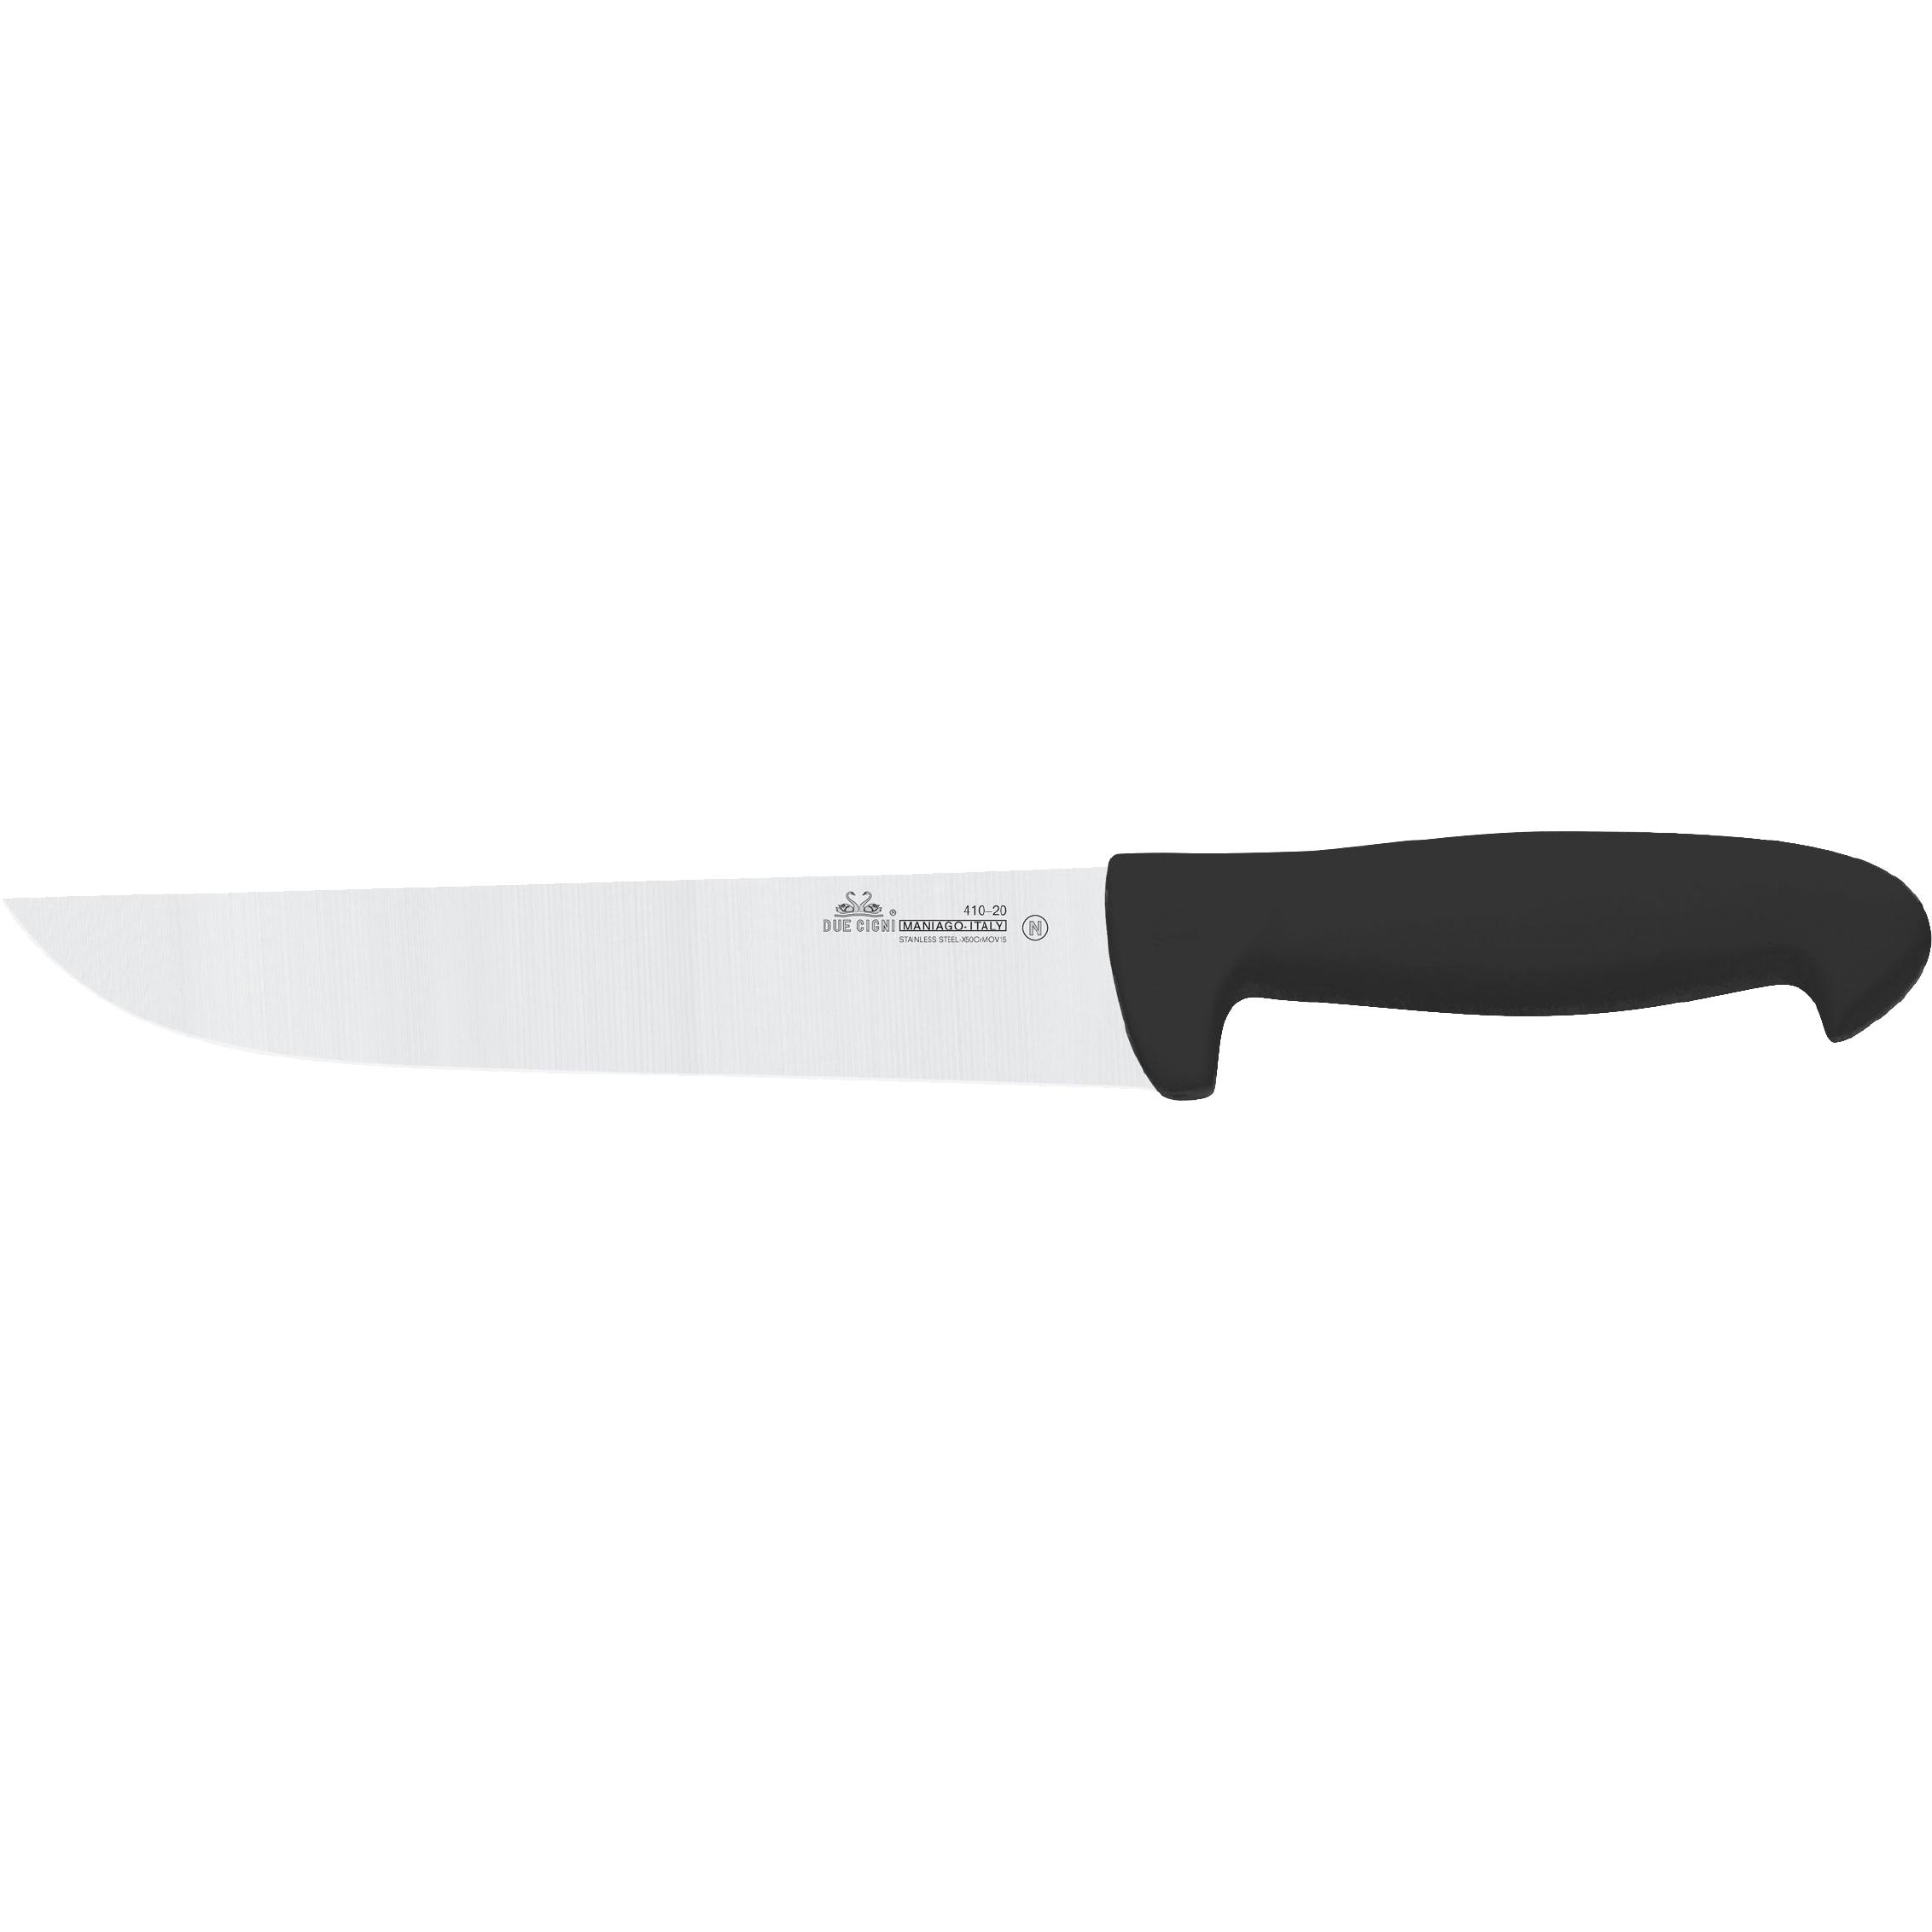 Ніж кухонний Due Cigni Professional Butcher Knife 180 мм. Колір - чорний 2C 410/20 N 1904.01.01